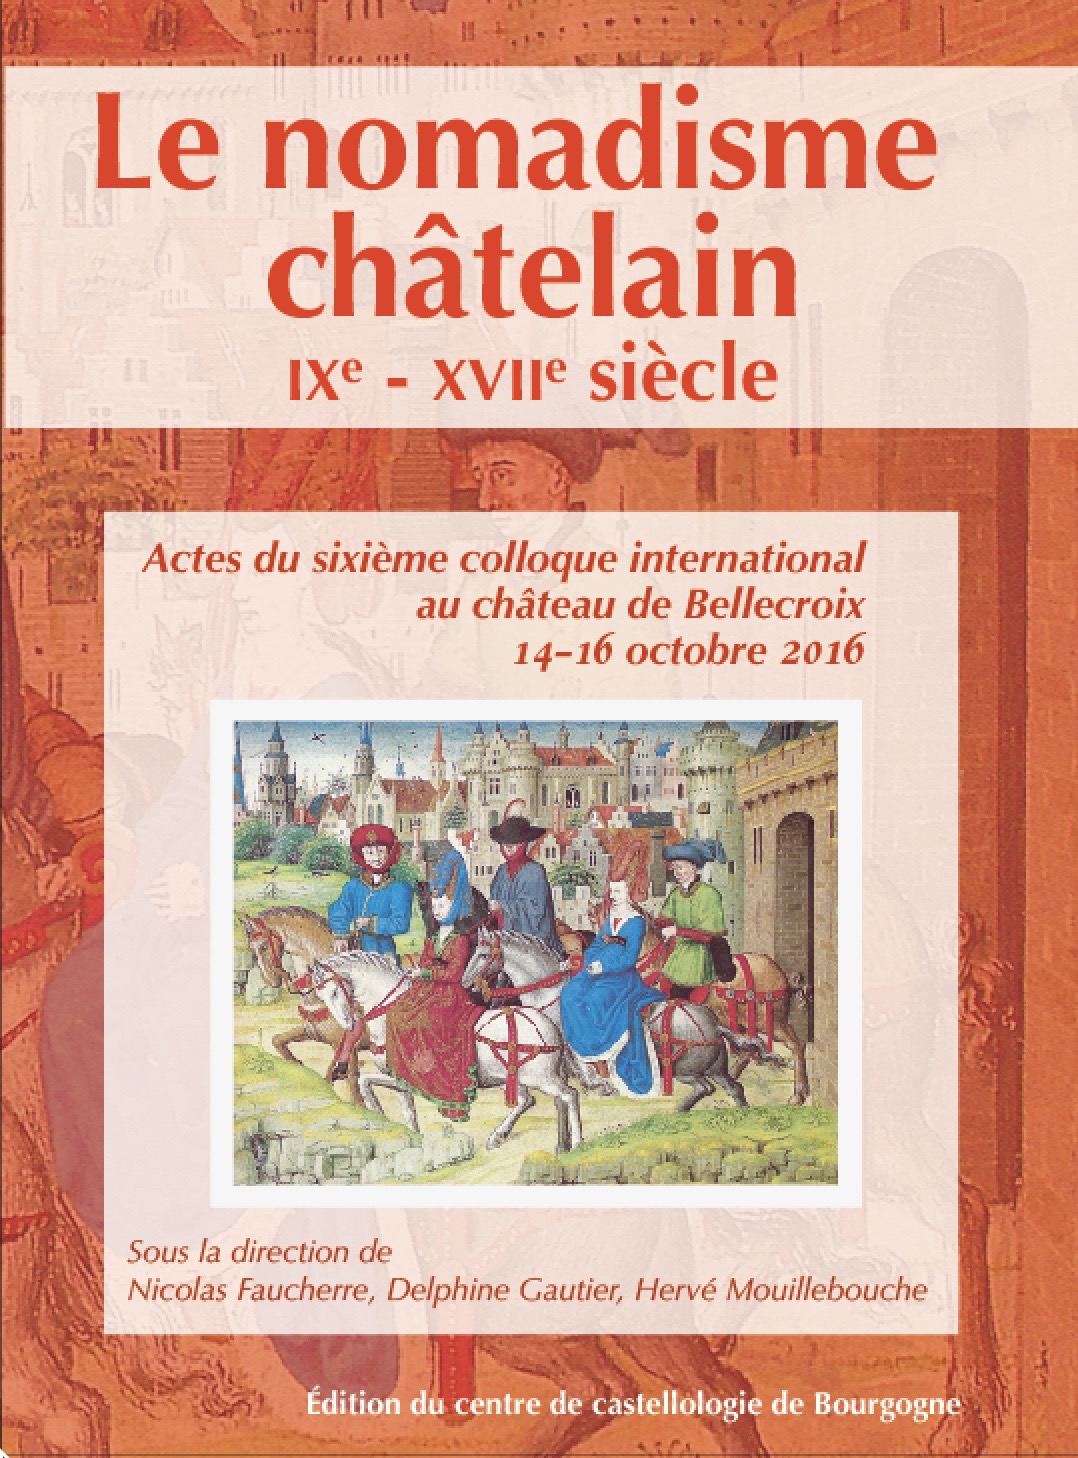 ÉPUISÉ - Le nomadisme châtelain, IXe-XVIIe siècle, (actes 6e coll. int. château de Bellecroix, oct. 2016), 2017, 374 p.